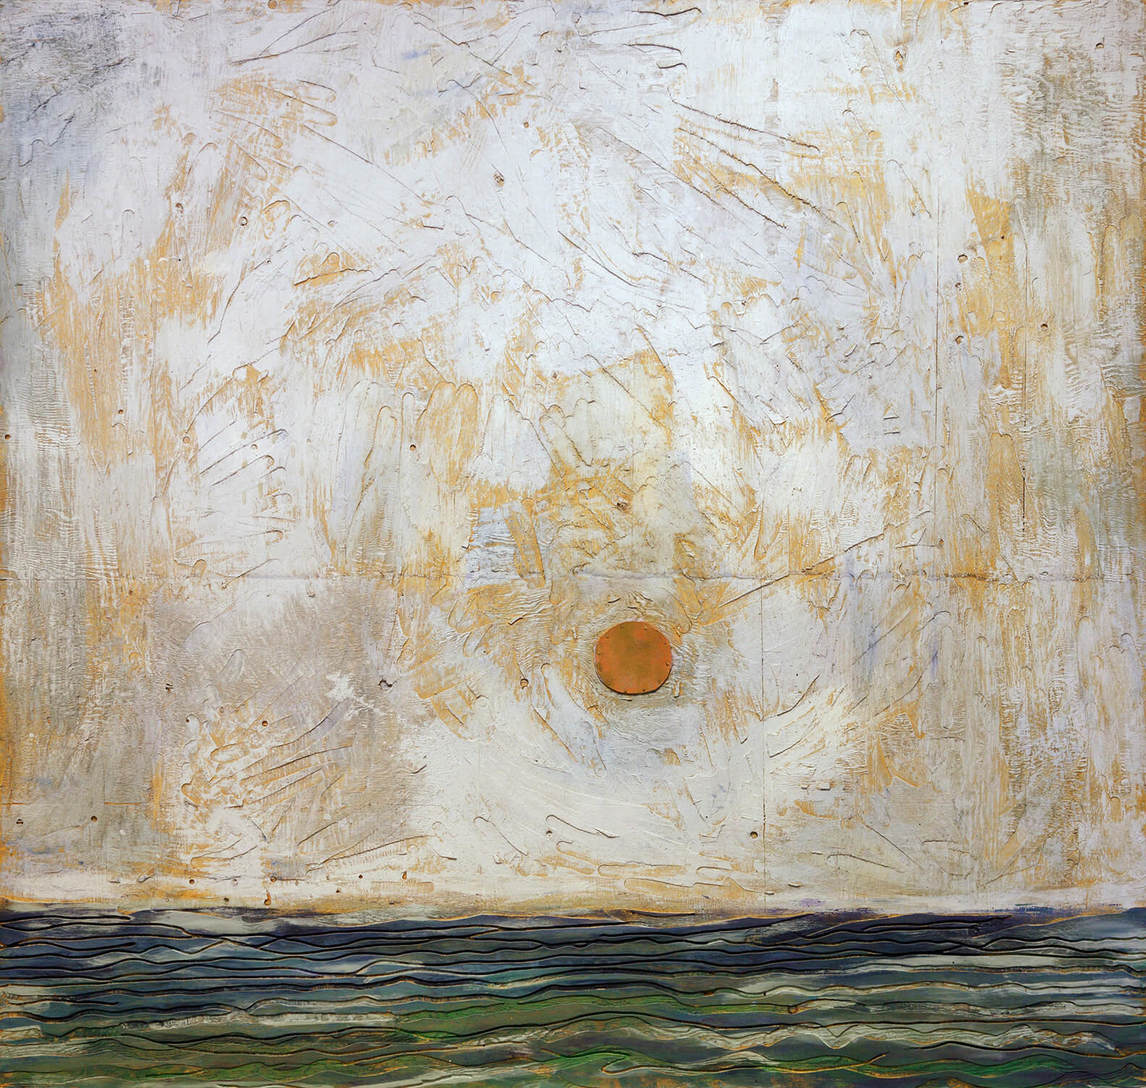 Paterson Ewen, Sunset over the Mediterranean (Coucher de soleil sur la Méditerranée), 1980